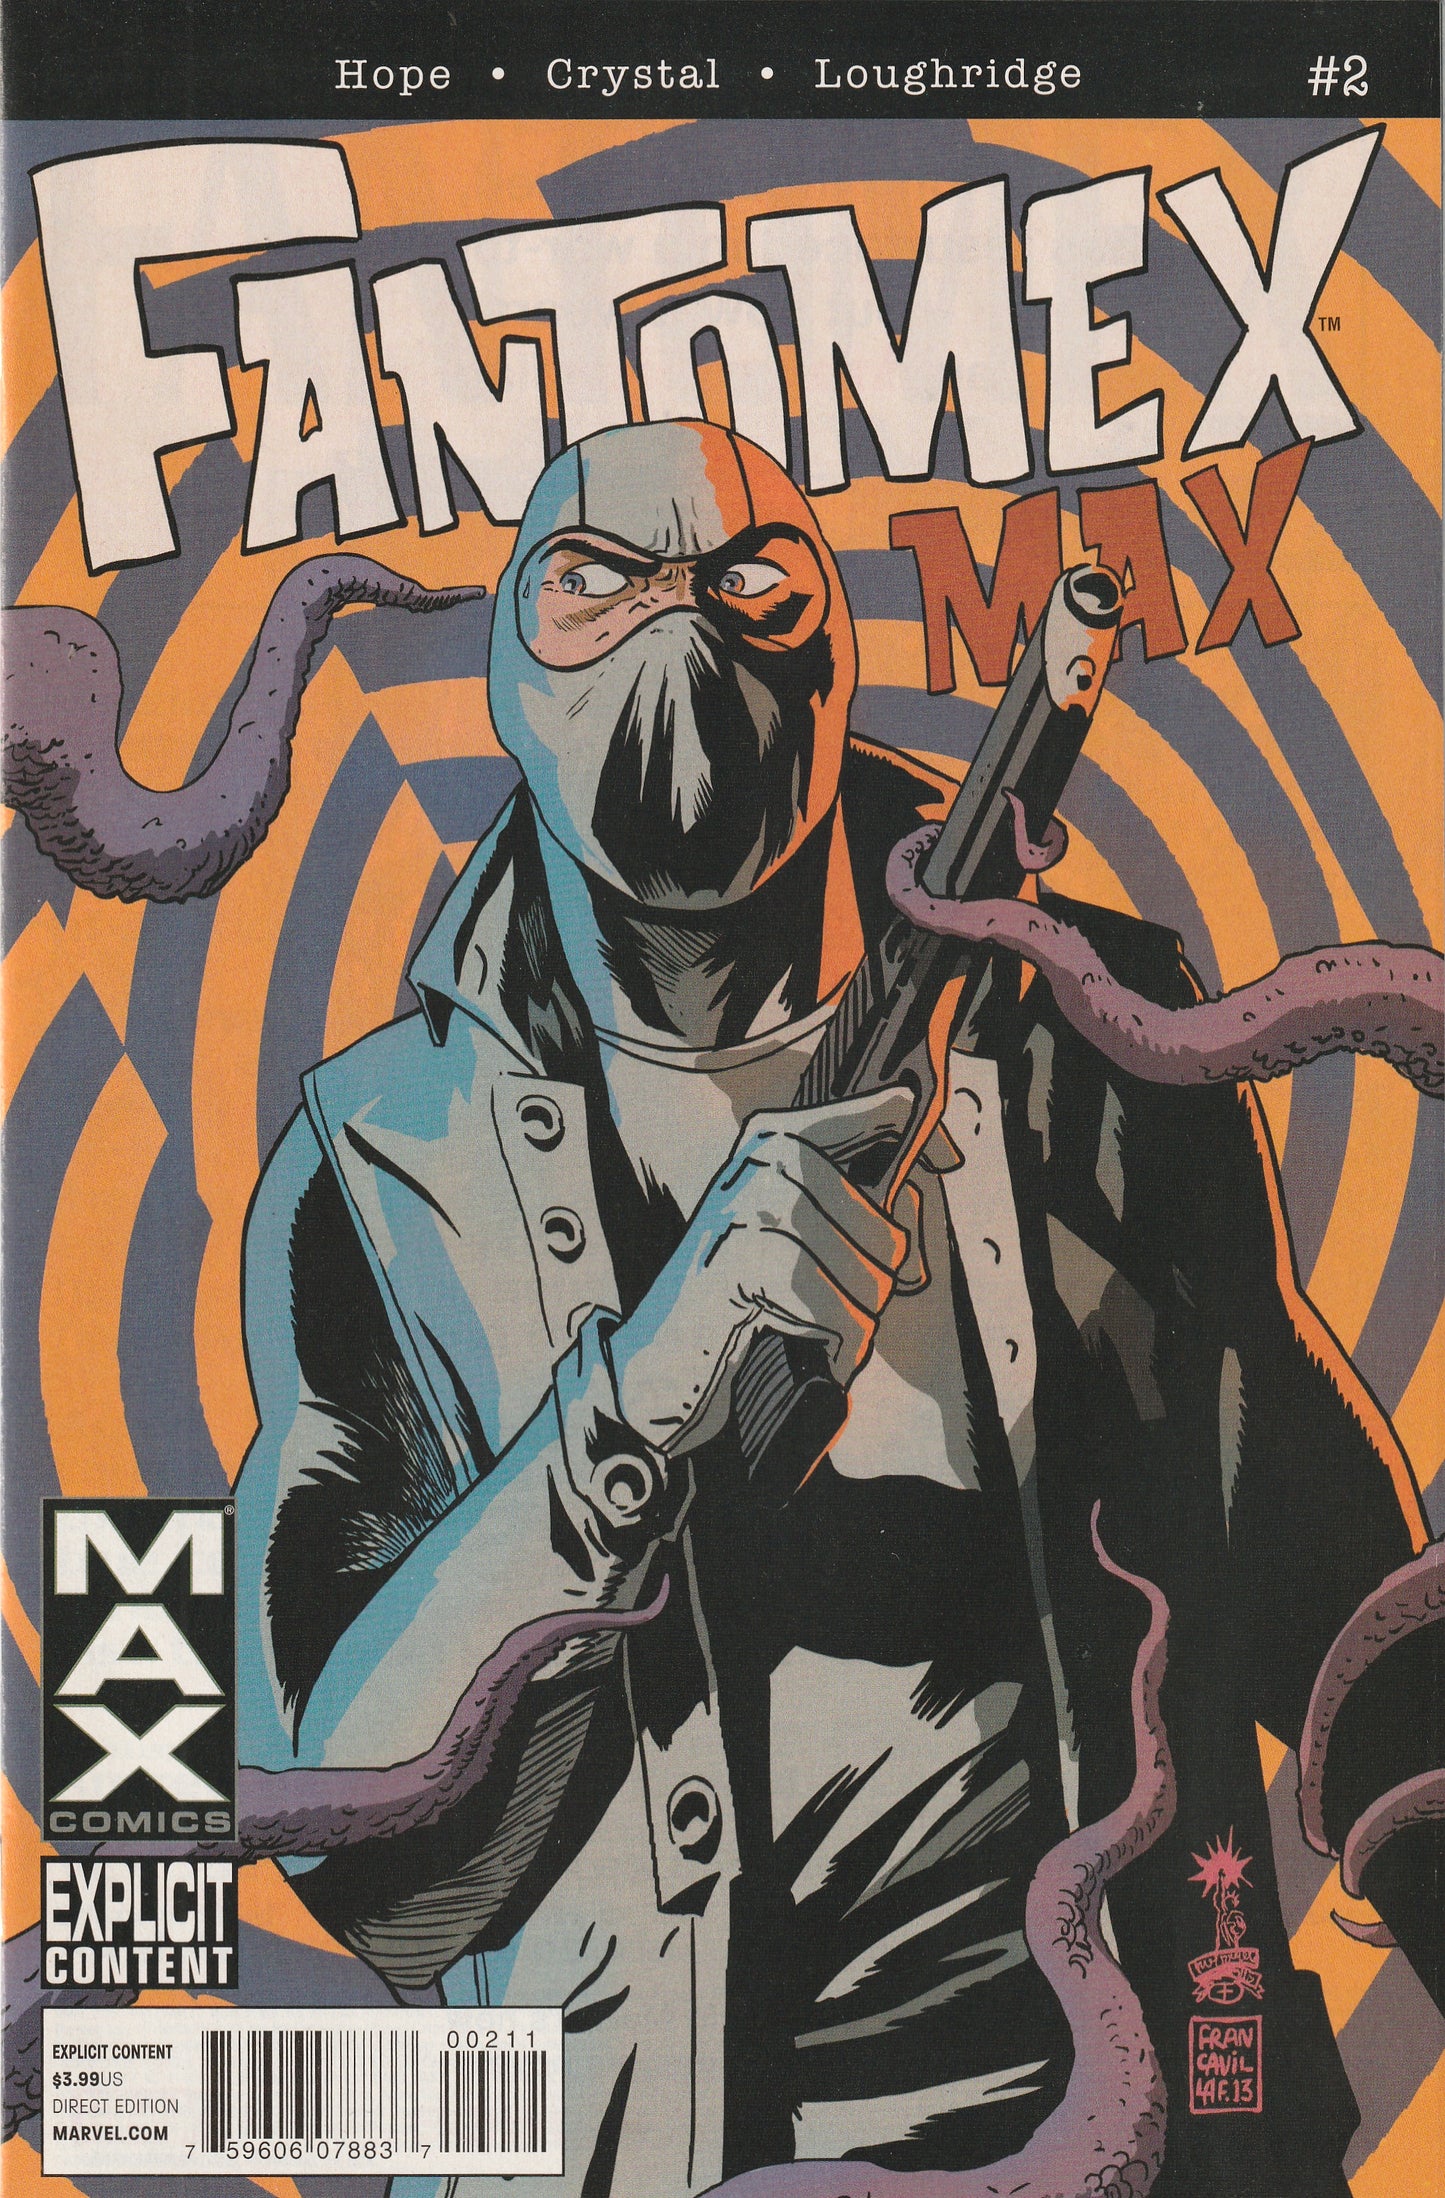 Fantomex MAX (2013-2014) MAX - 4 issue mini series (Explicit Content)